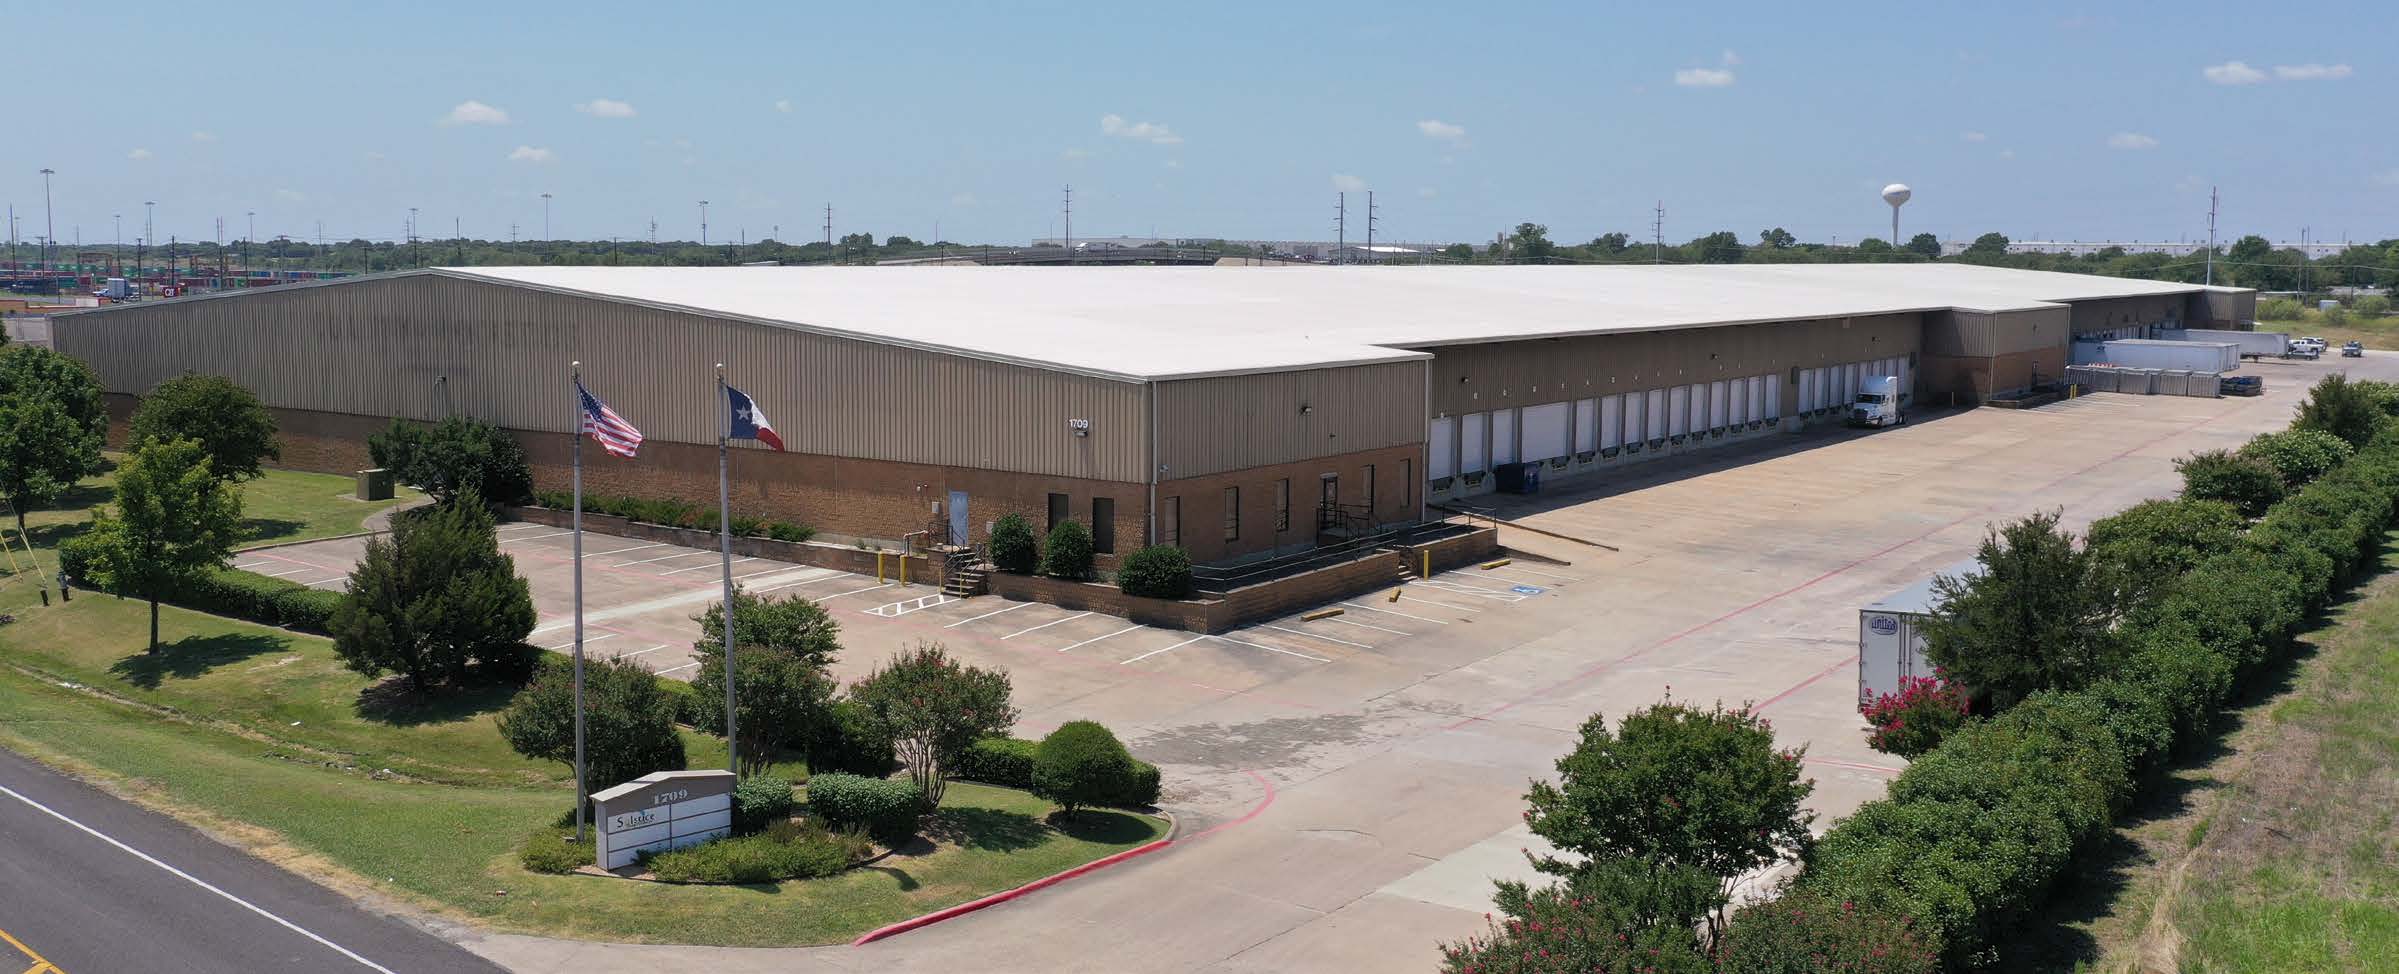 I-45 Logistics Center in South Dallas.